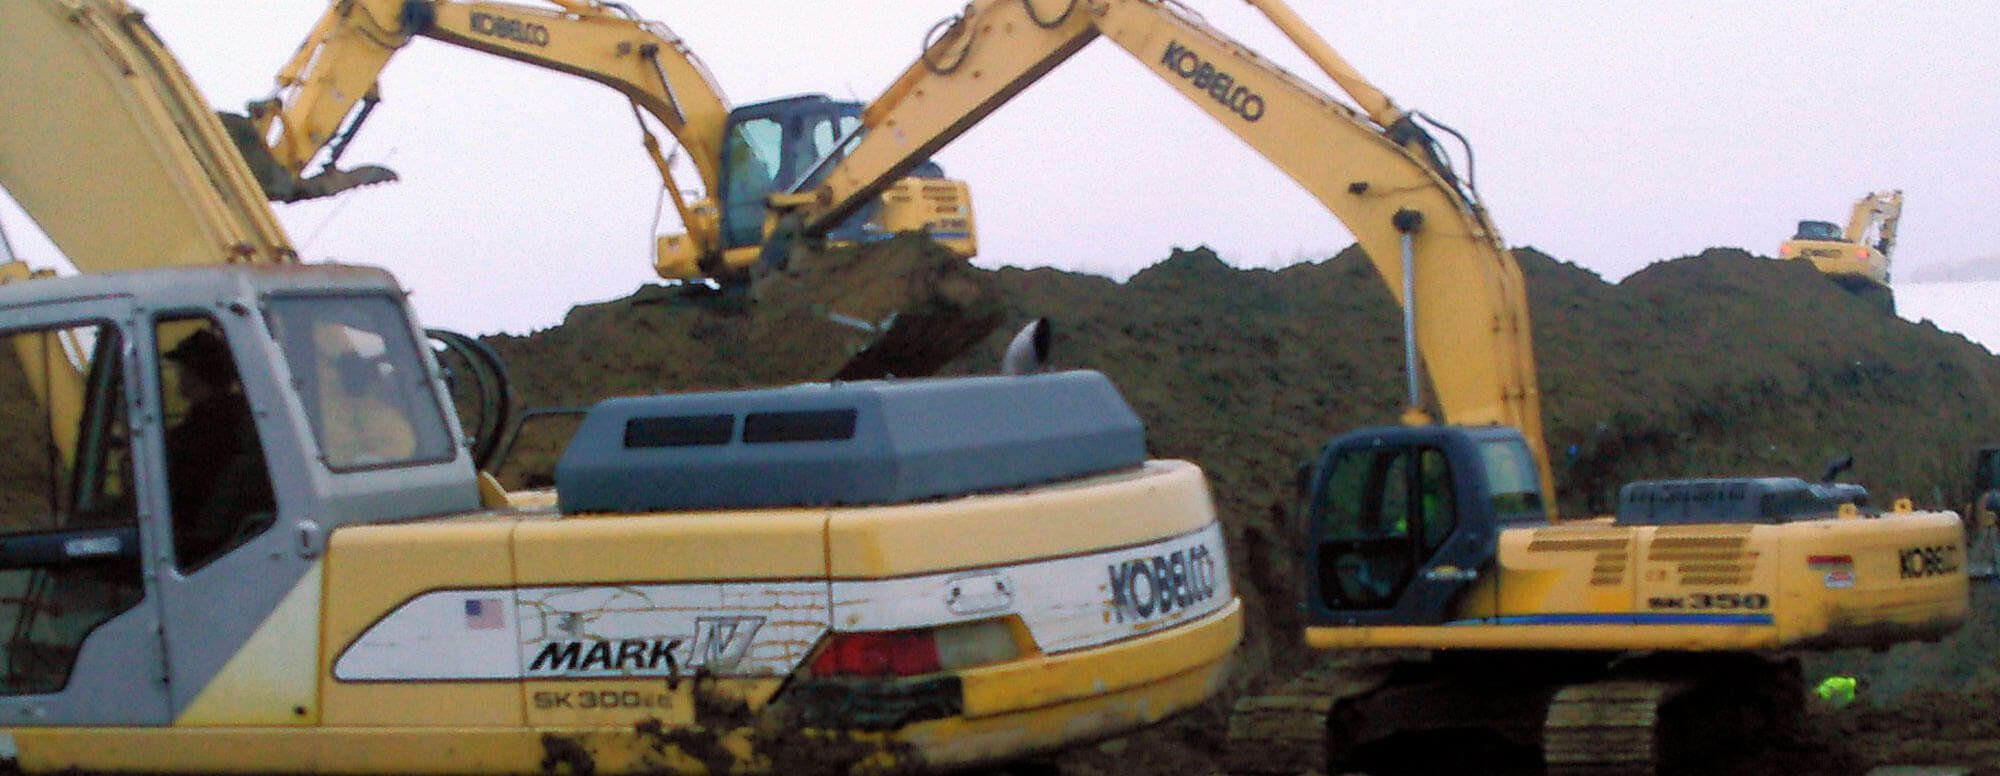 A number of Dahle Enterprises' large excavators digging on a hillside